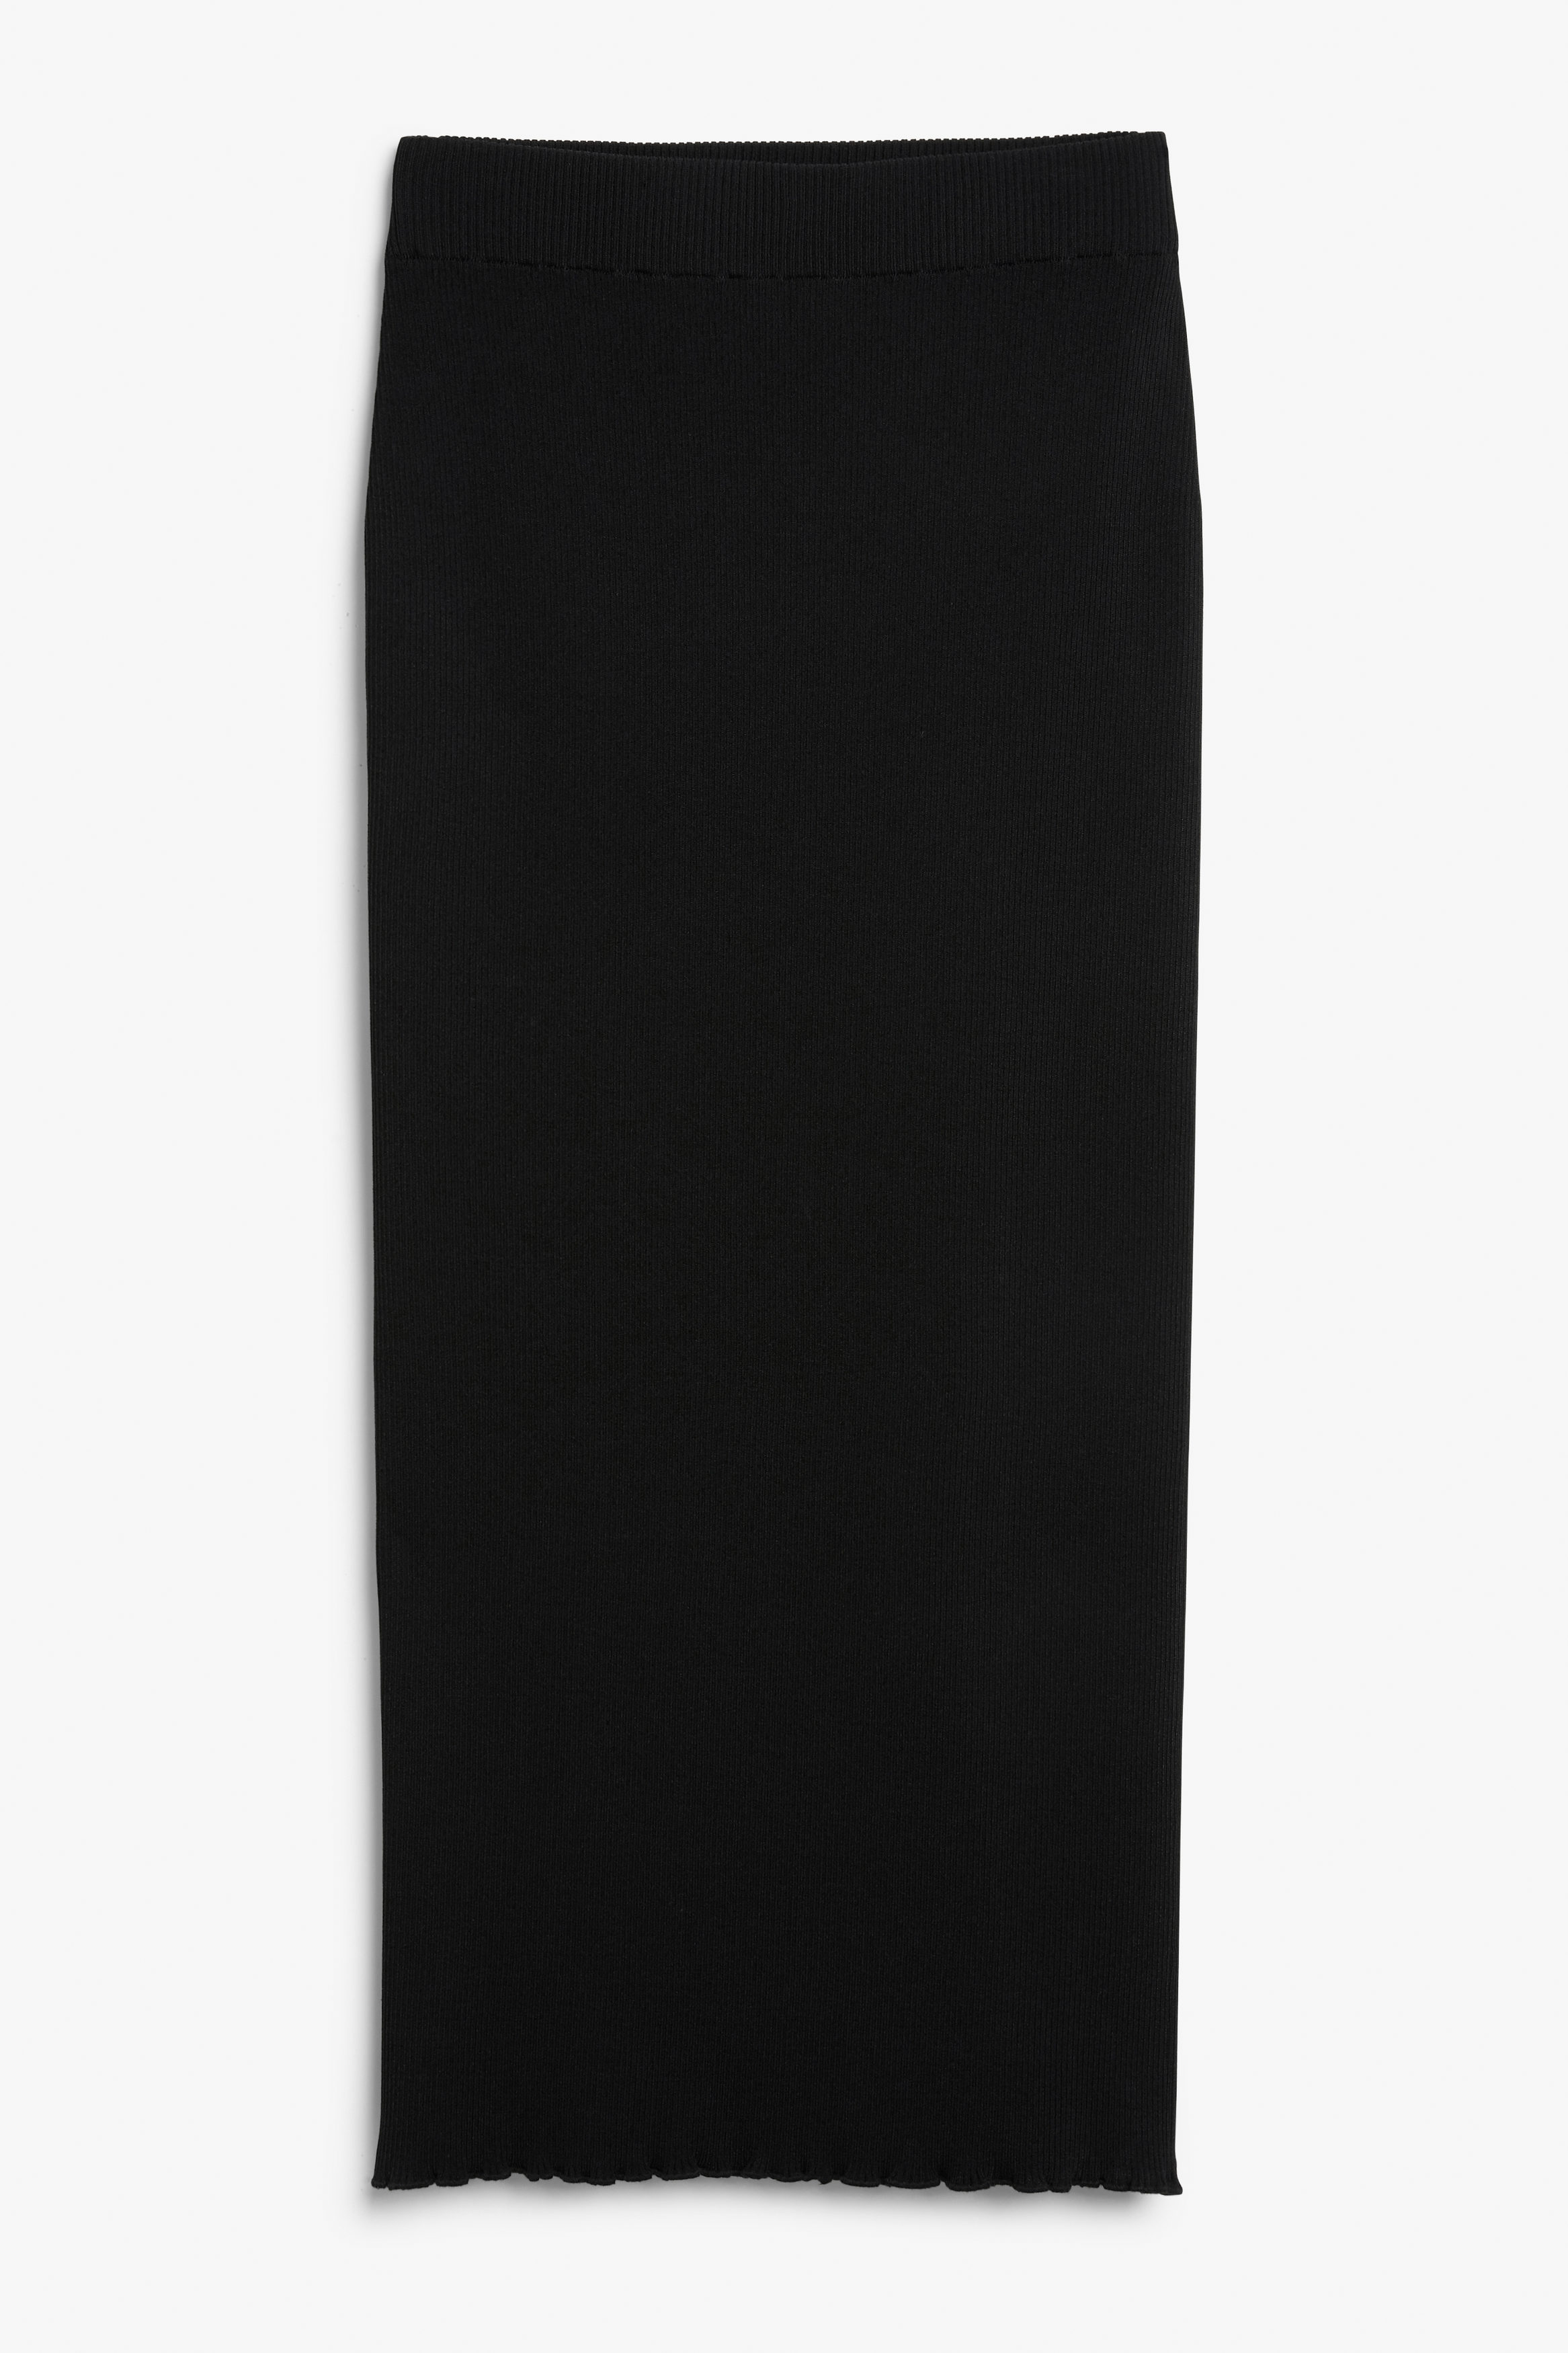 Billede af Monki Sort Nederdel I Rib Med Bølgekant, Nederdele. Farve: Black størrelse S